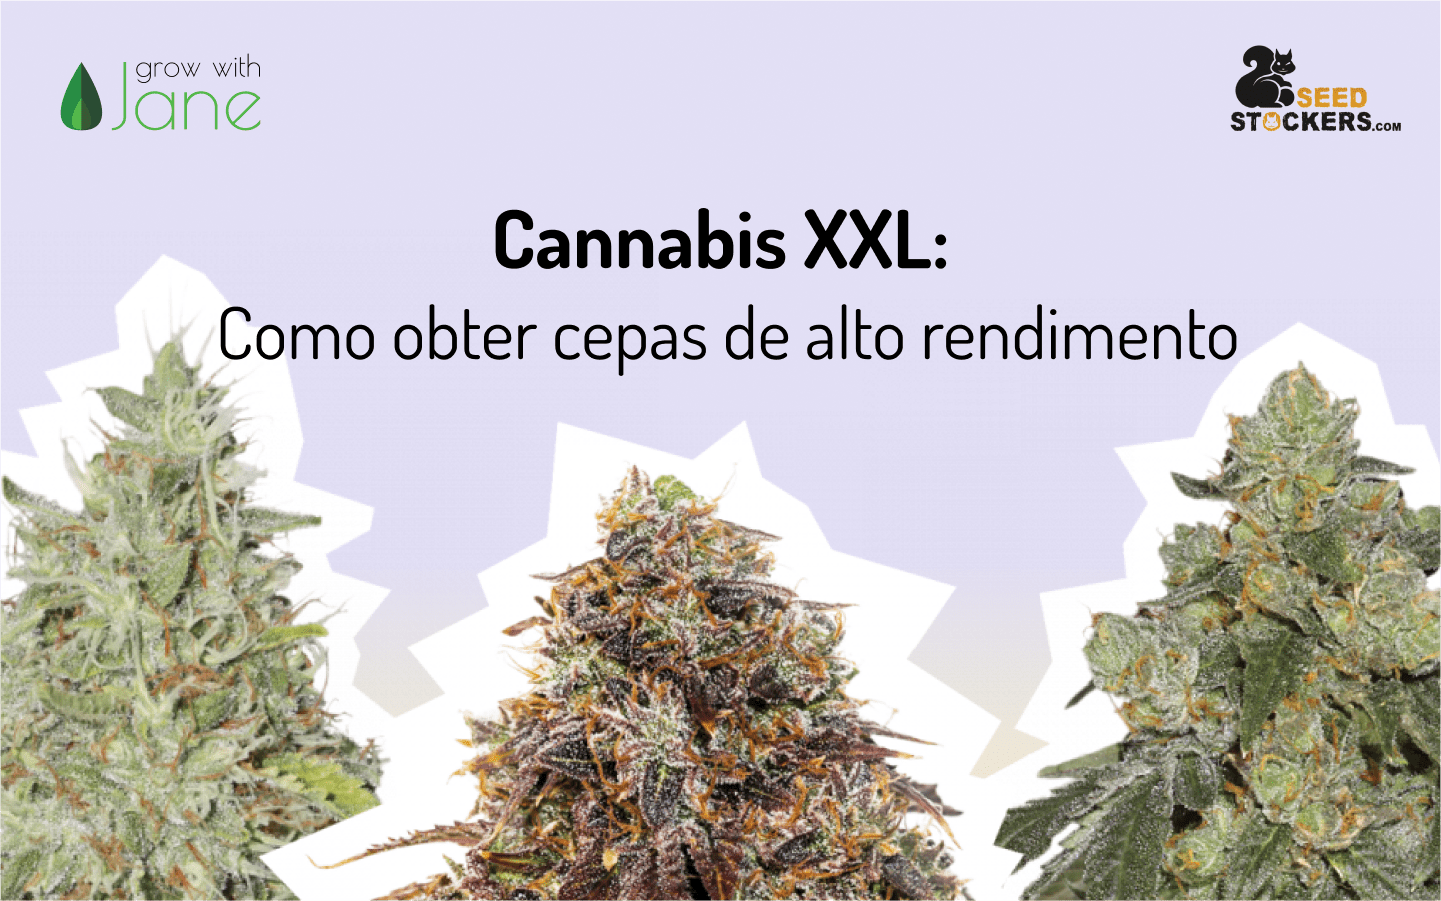 Cannabis XXL: Como obter cepas de alto rendimento